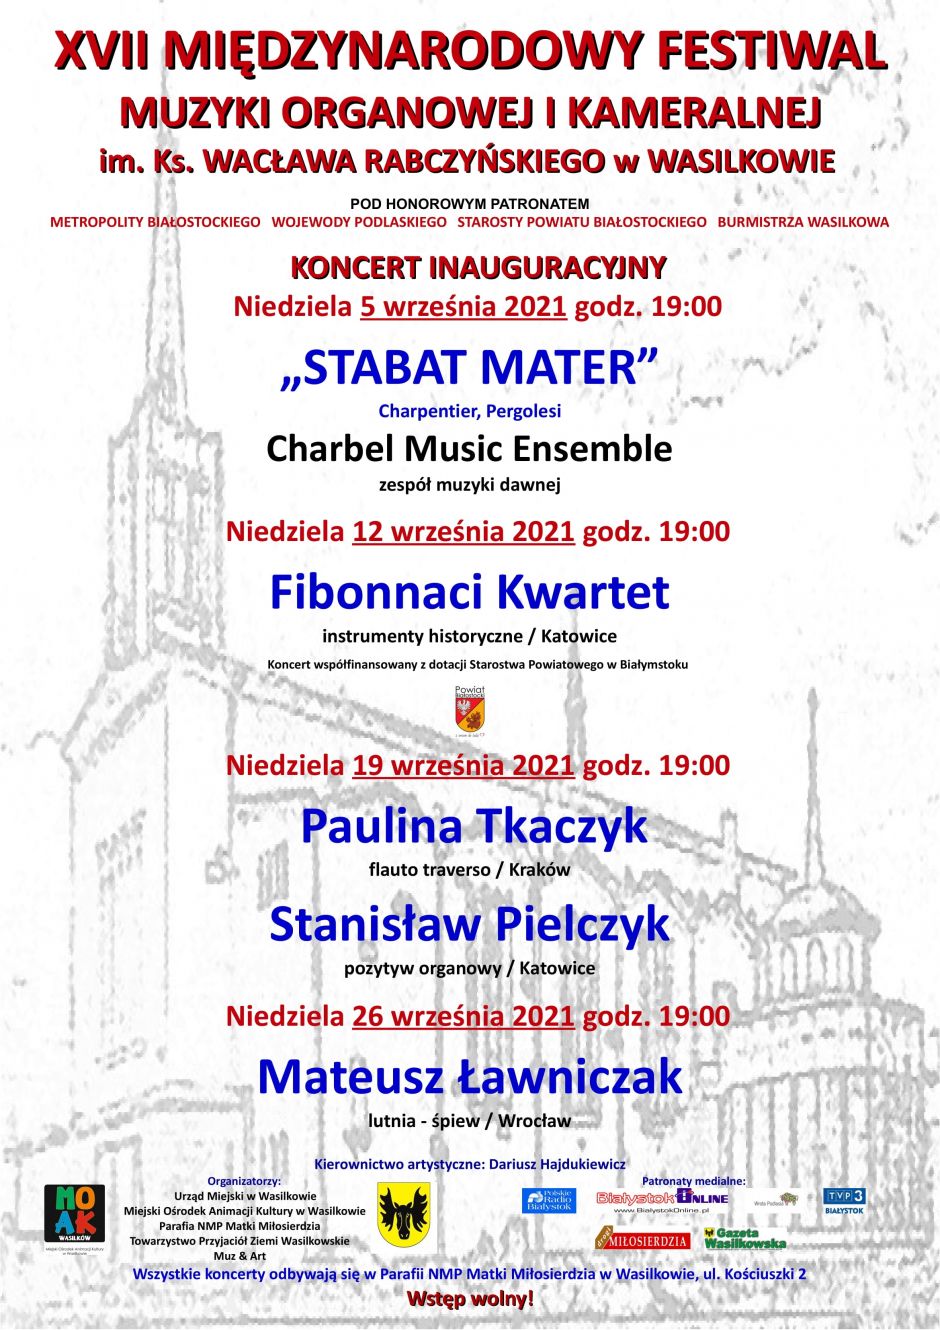 XVII Międzynarodowy Festiwal Muzyki Organowej i Kameralnej w Wasilkowie